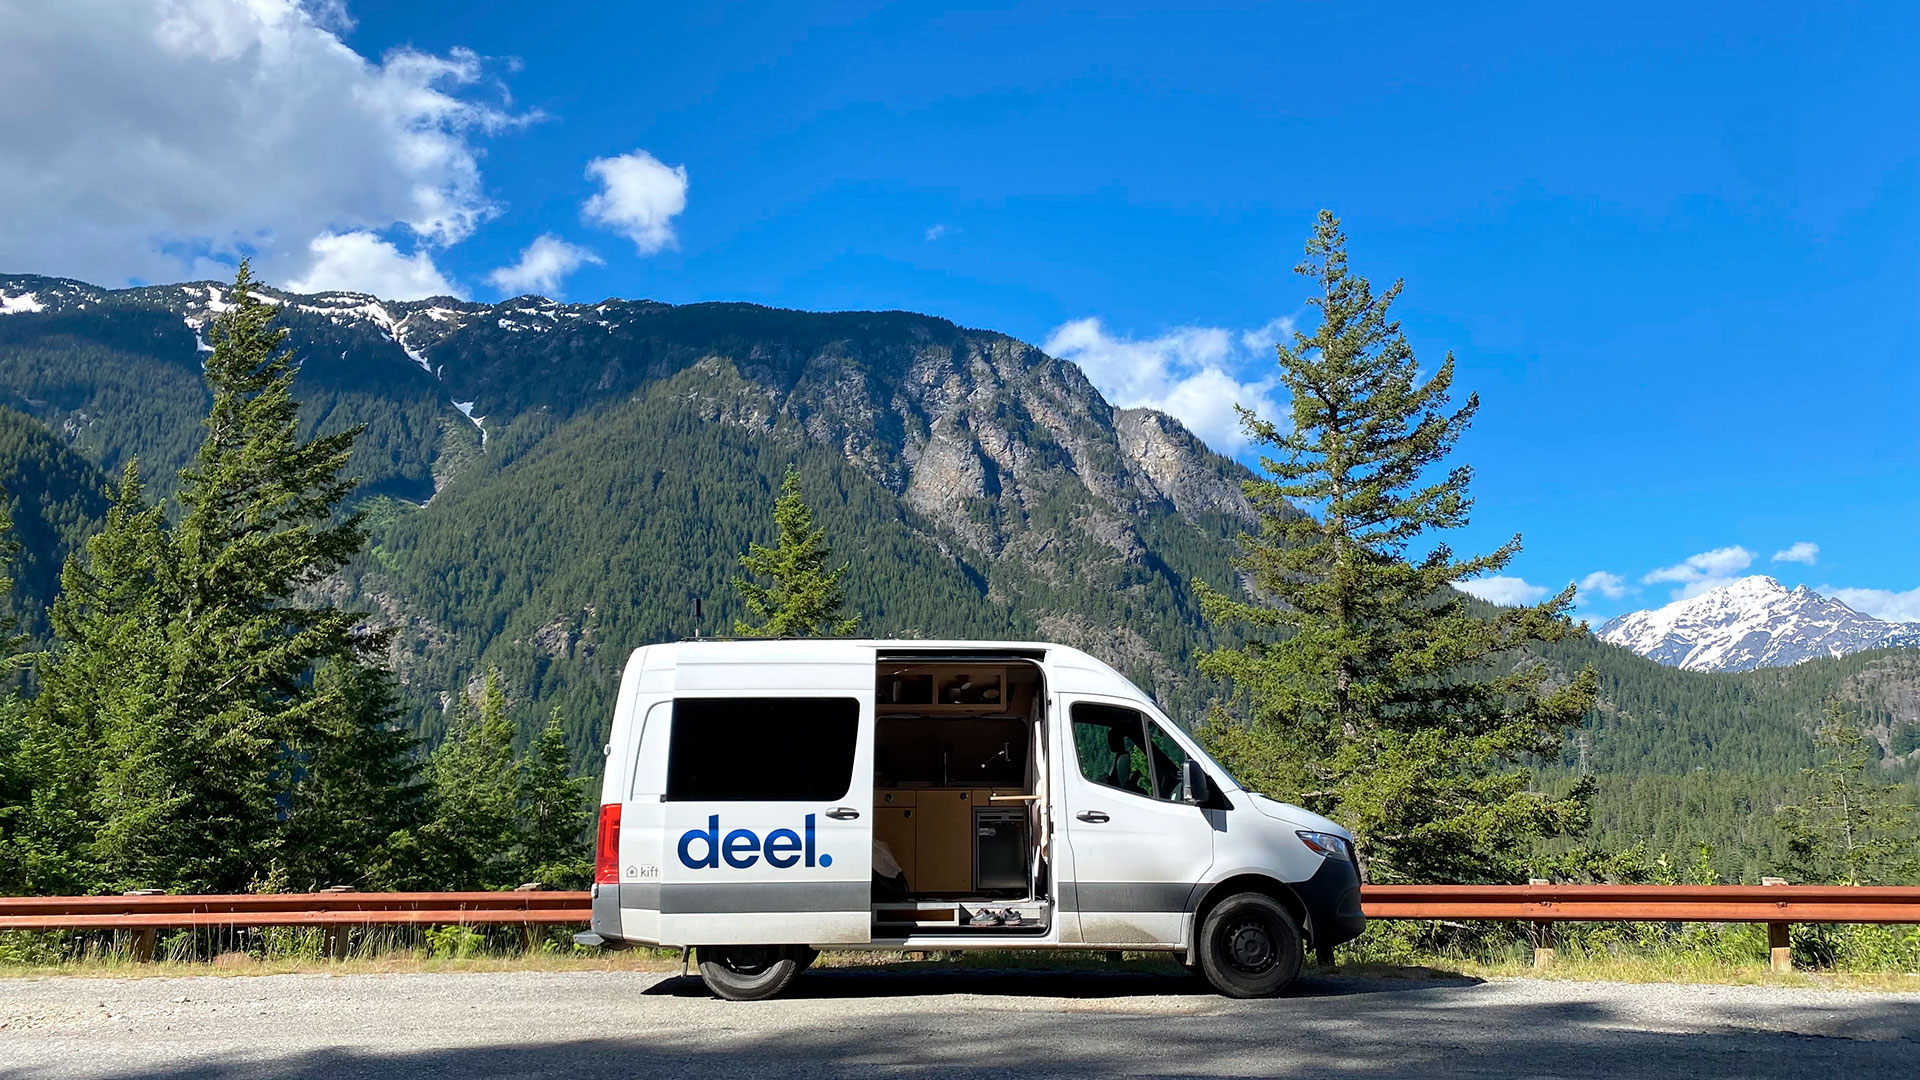 El Deel Mobeel, la camioneta que entregan para viajar durante 6 meses creando contenido. (Deel)